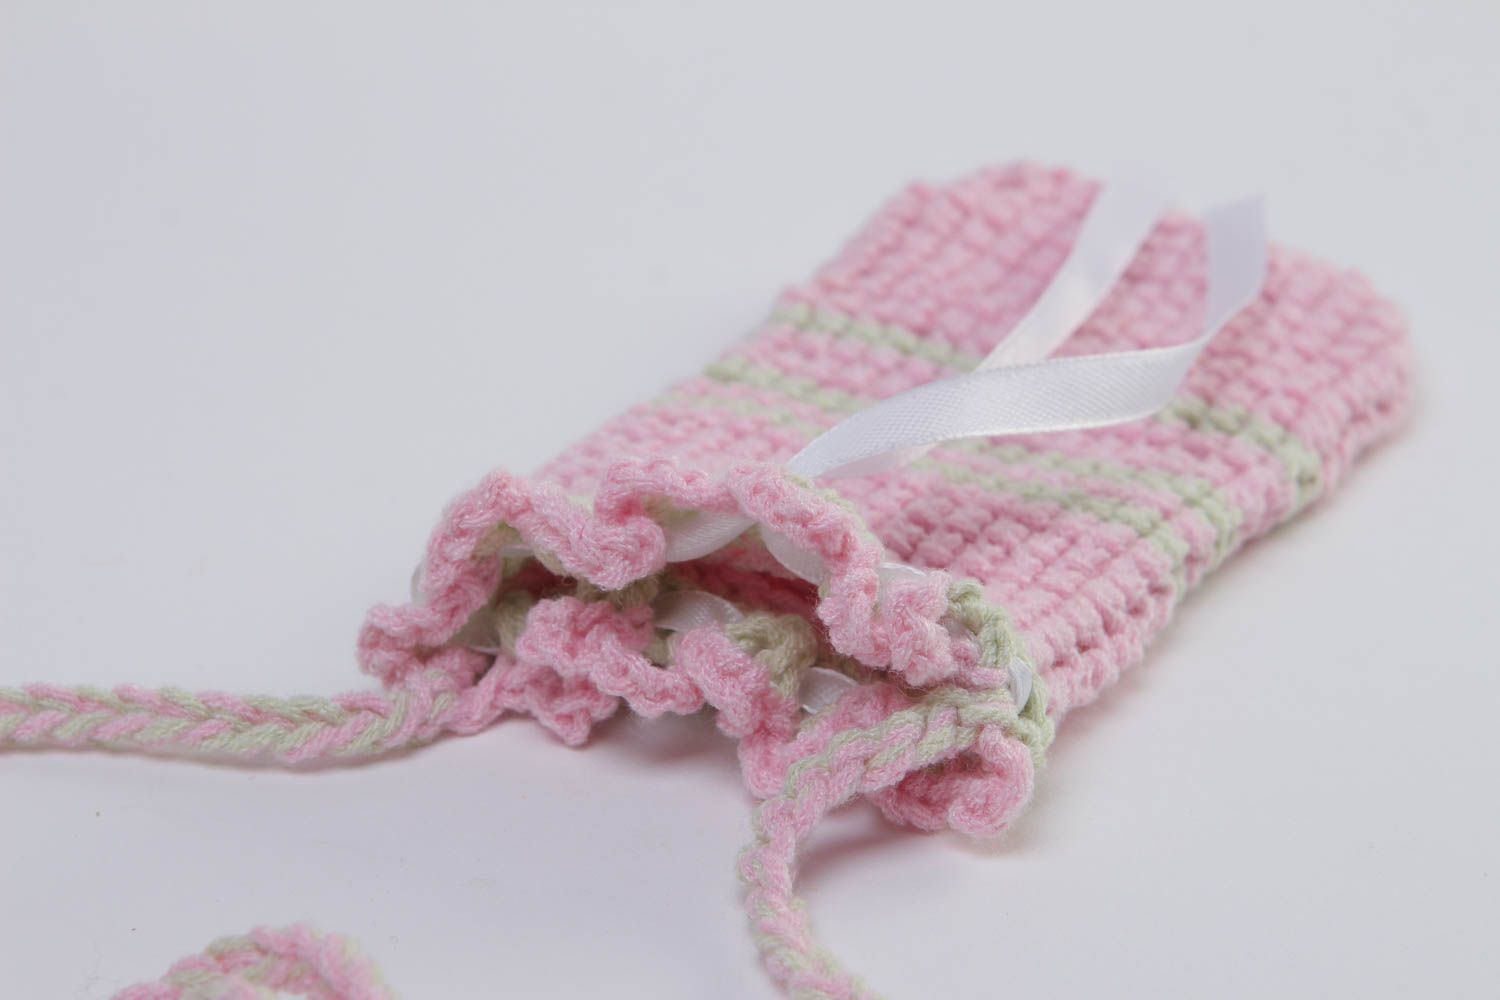 Beautiful handmade crochet phone case gadget accessories crochet ideas photo 3